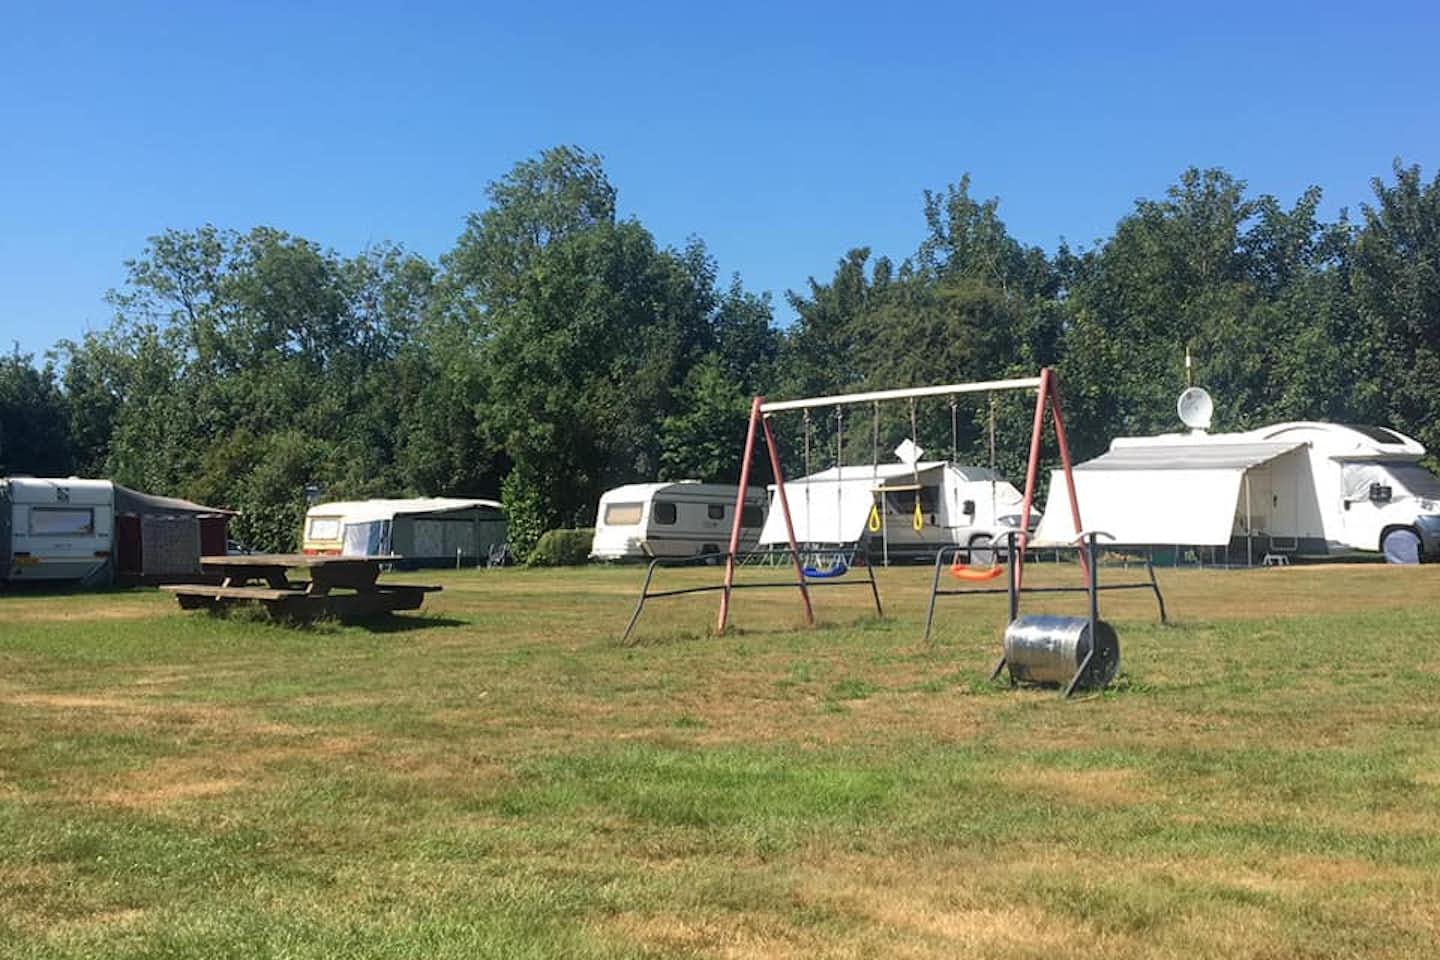 Vodatent @ Camping Eefting - Blick auf weitläufige Wiese mit Schaukel und Picknicktisch, dahinter Standplätze mit Wohnwagen